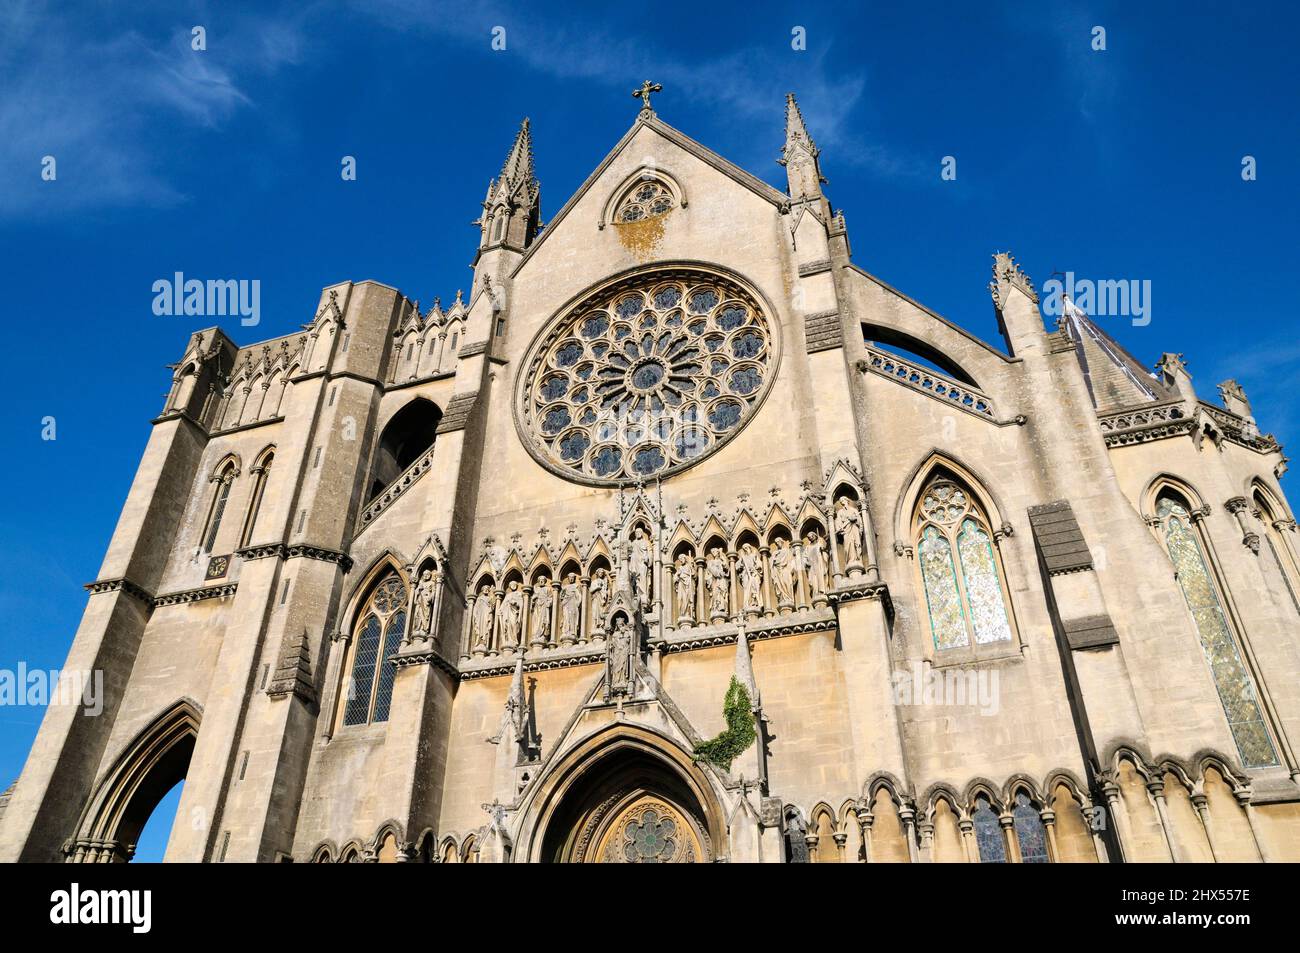 Cathédrale d'Arundel, façade ouest. L'église de la cathédrale notre-Dame et St Philip Howard. Fenêtre en rose au-dessus des sculptures ornementales de Marie, du Christ et des Apôtres Banque D'Images